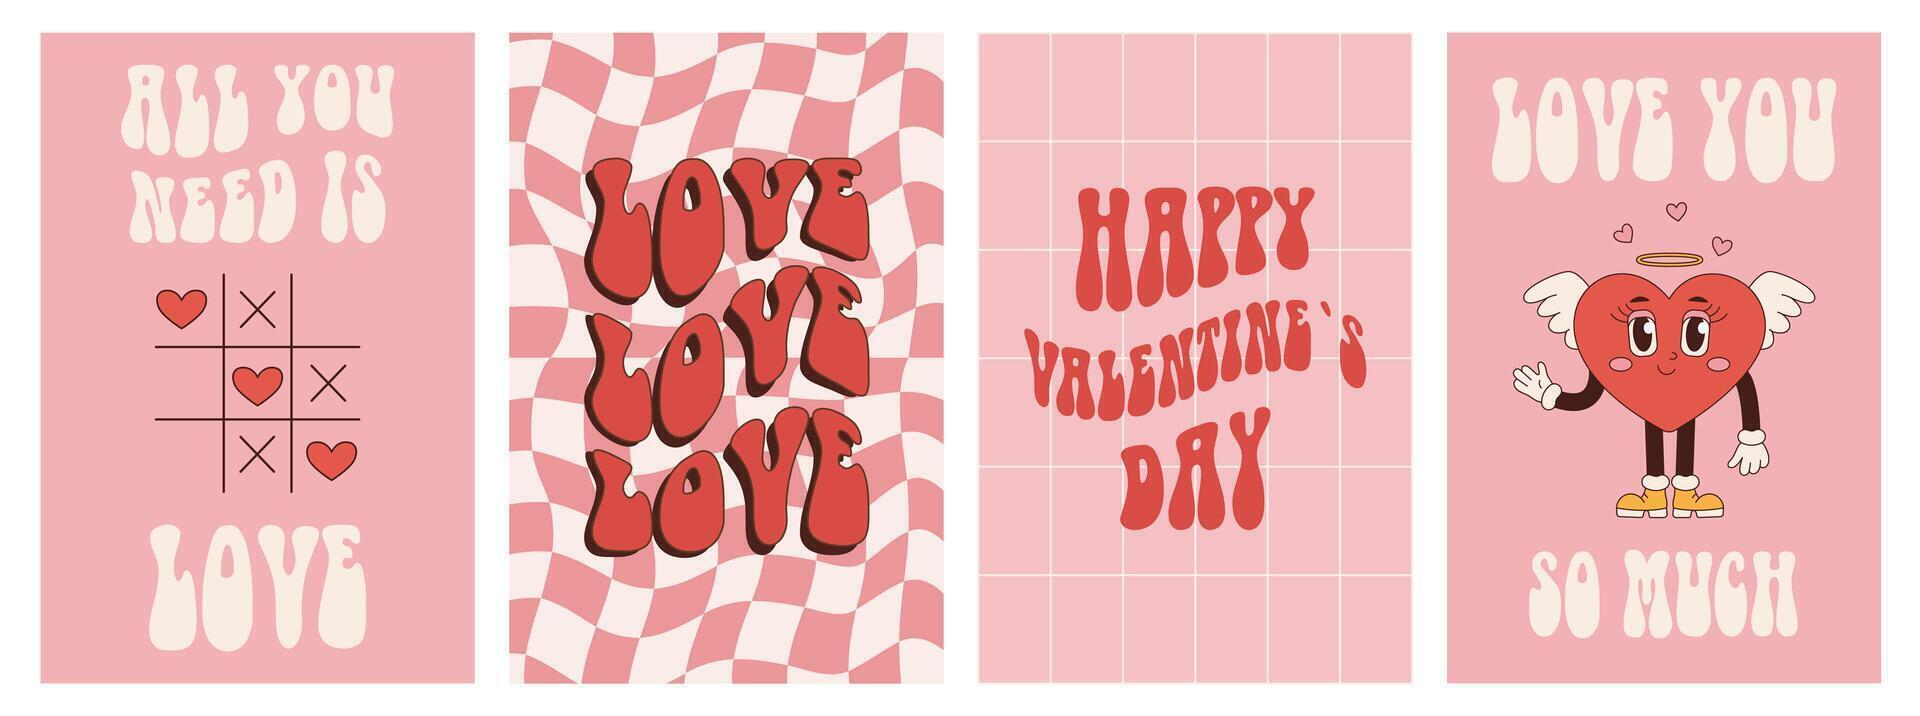 reeks groovy gelukkig valentijnsdag dag kaarten, affiches. liefde concept in roze, rood kleuren. modieus vector illustratie in retro Jaren 60 jaren 70 stijl